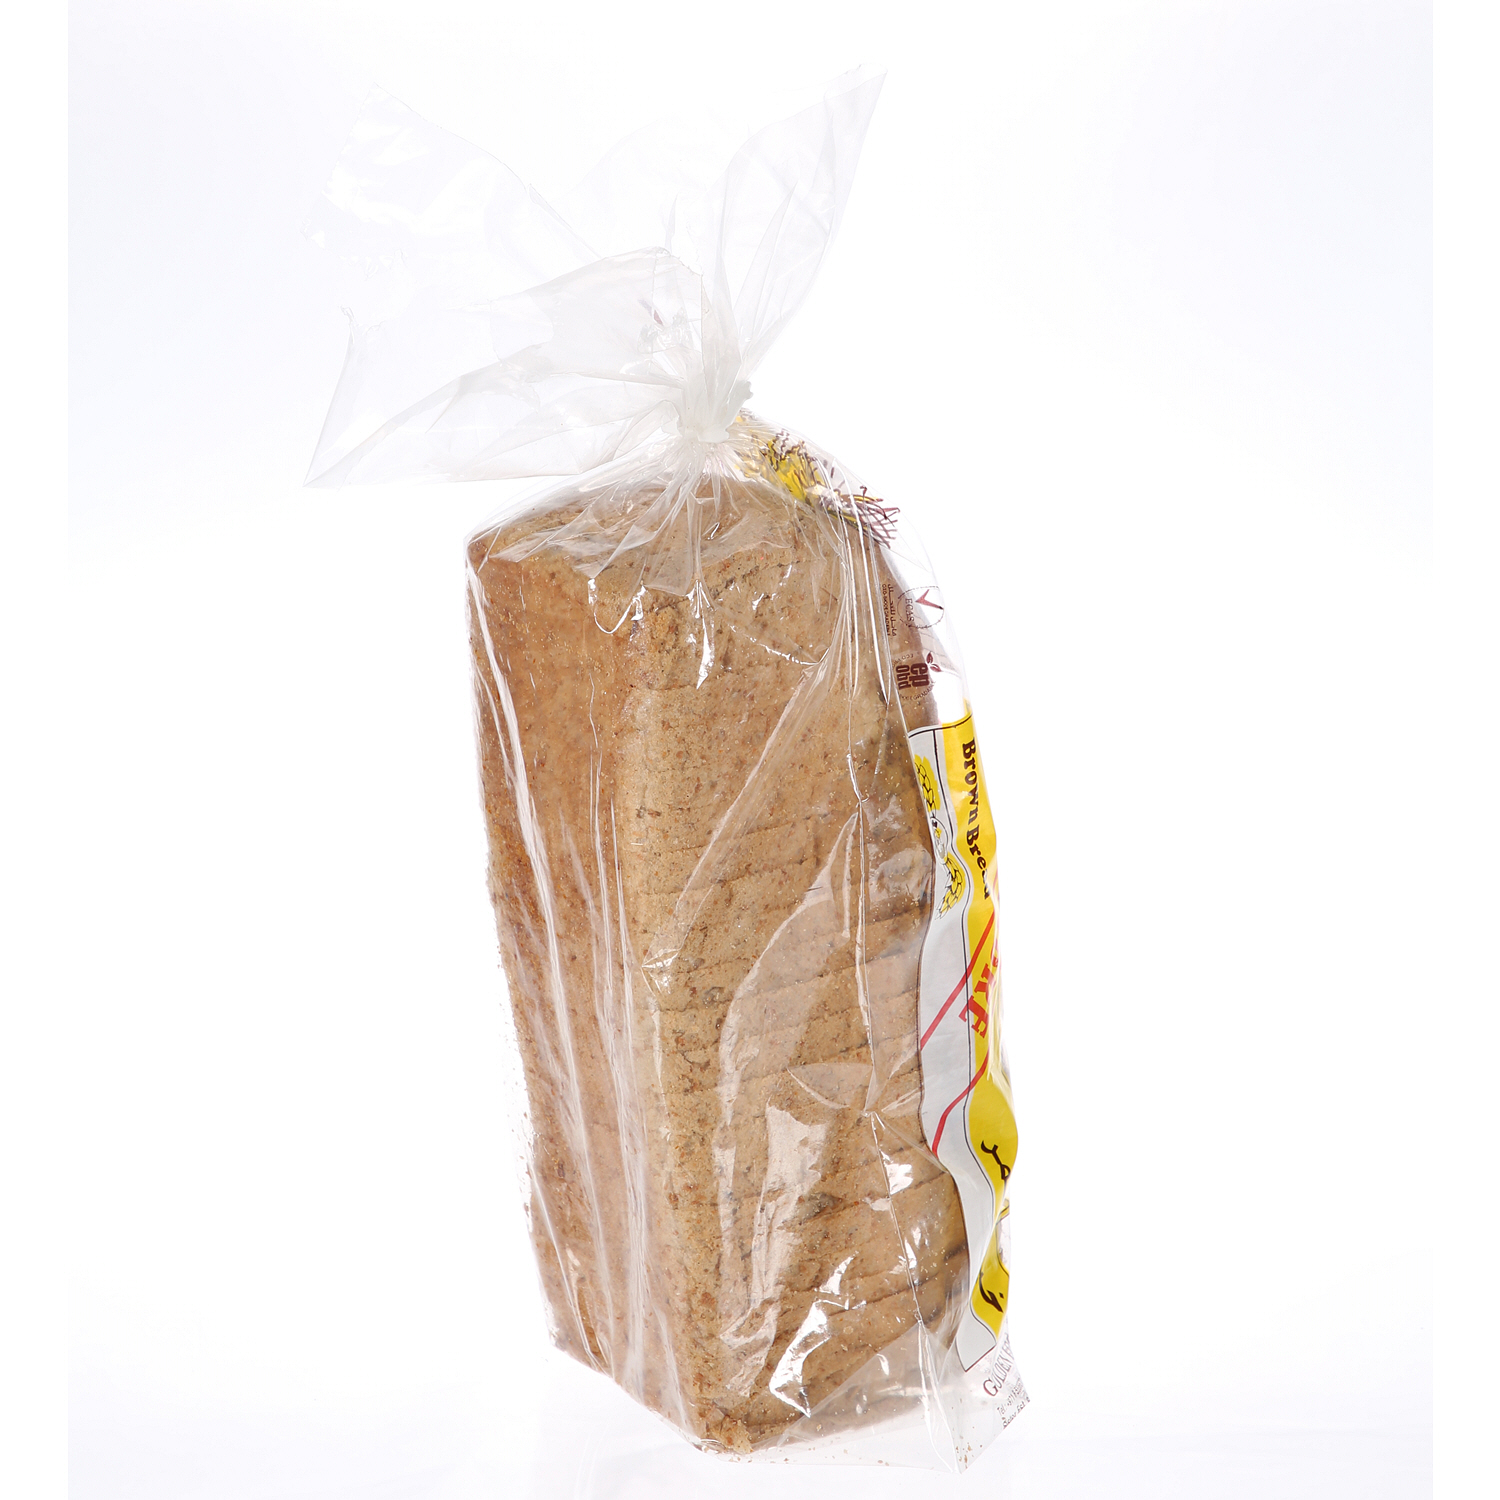 Golden Loaf Bread Brown